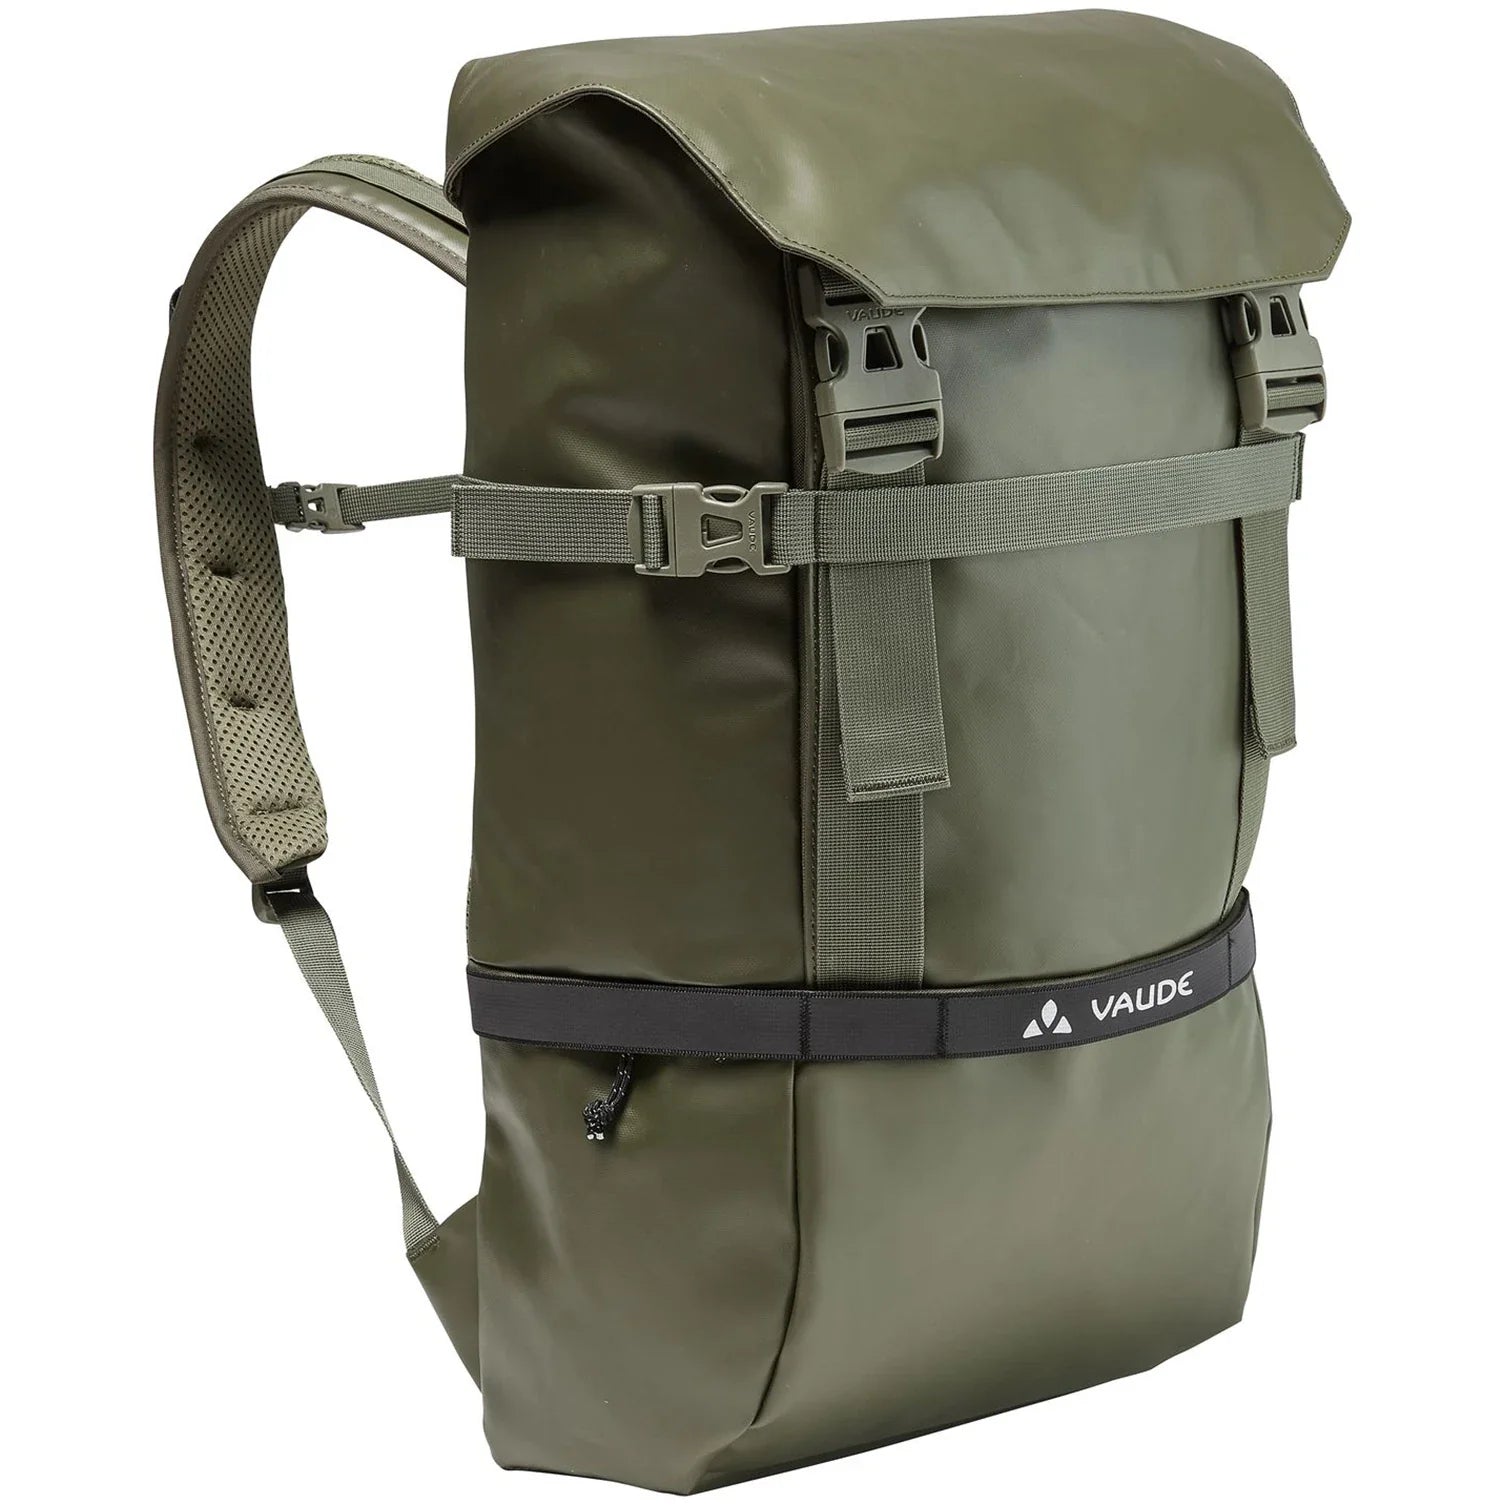 Vaude Mineo Backpack 30 sac à dos de ville 48 cm - Kaki